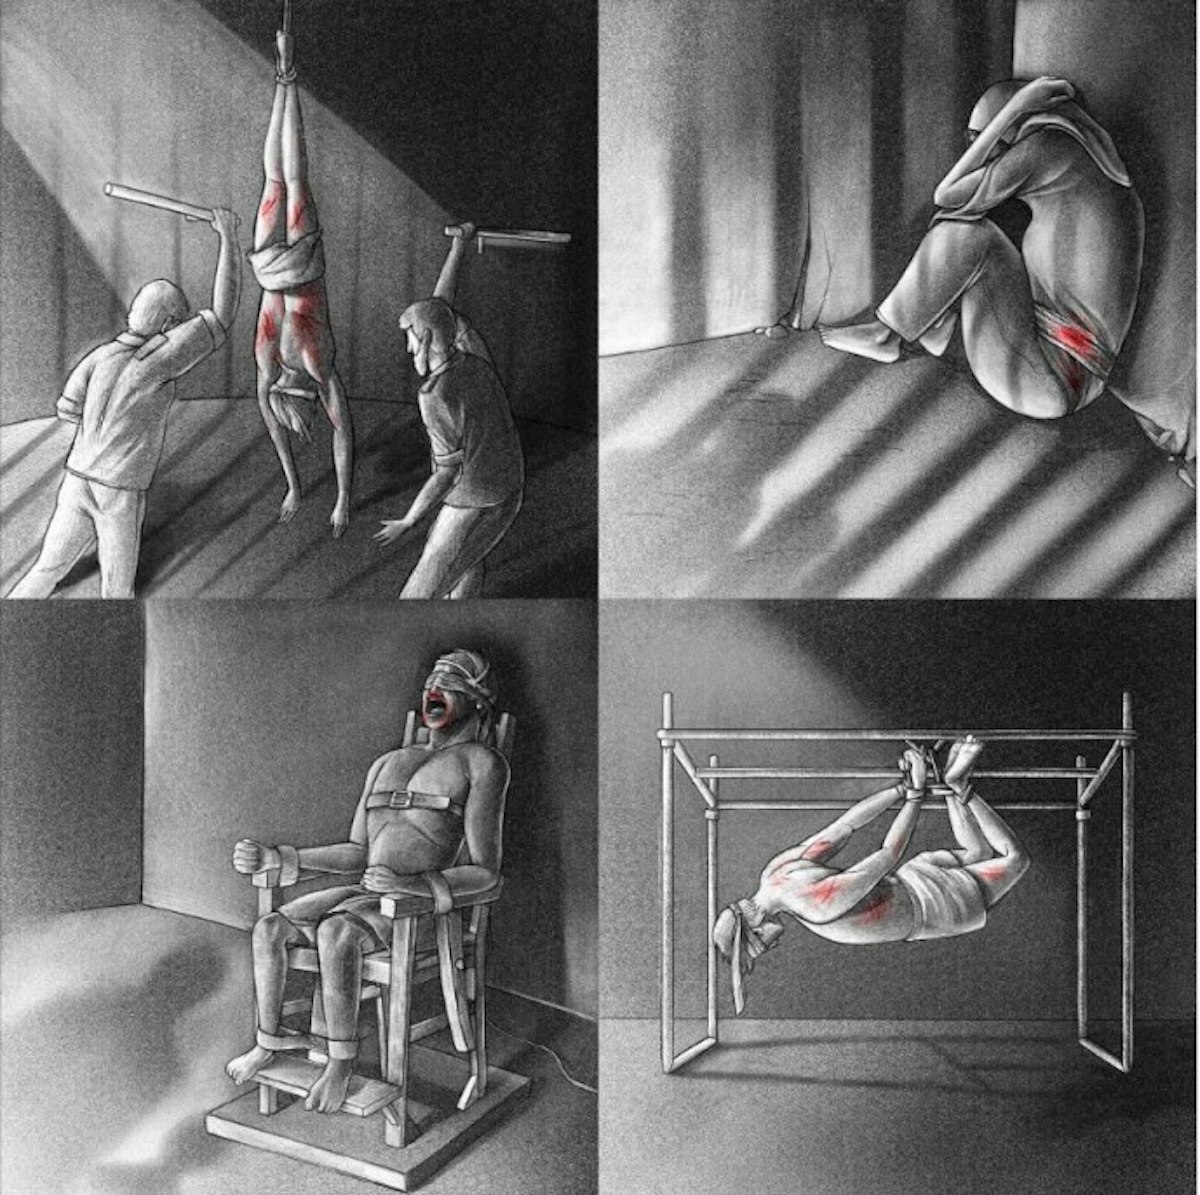 رسوم توضيحية أوردتها منظمة العفو الدولية في تقرير عام 2020 حول أنواع التعذيب في السجون الإيرانية - amnesty.org